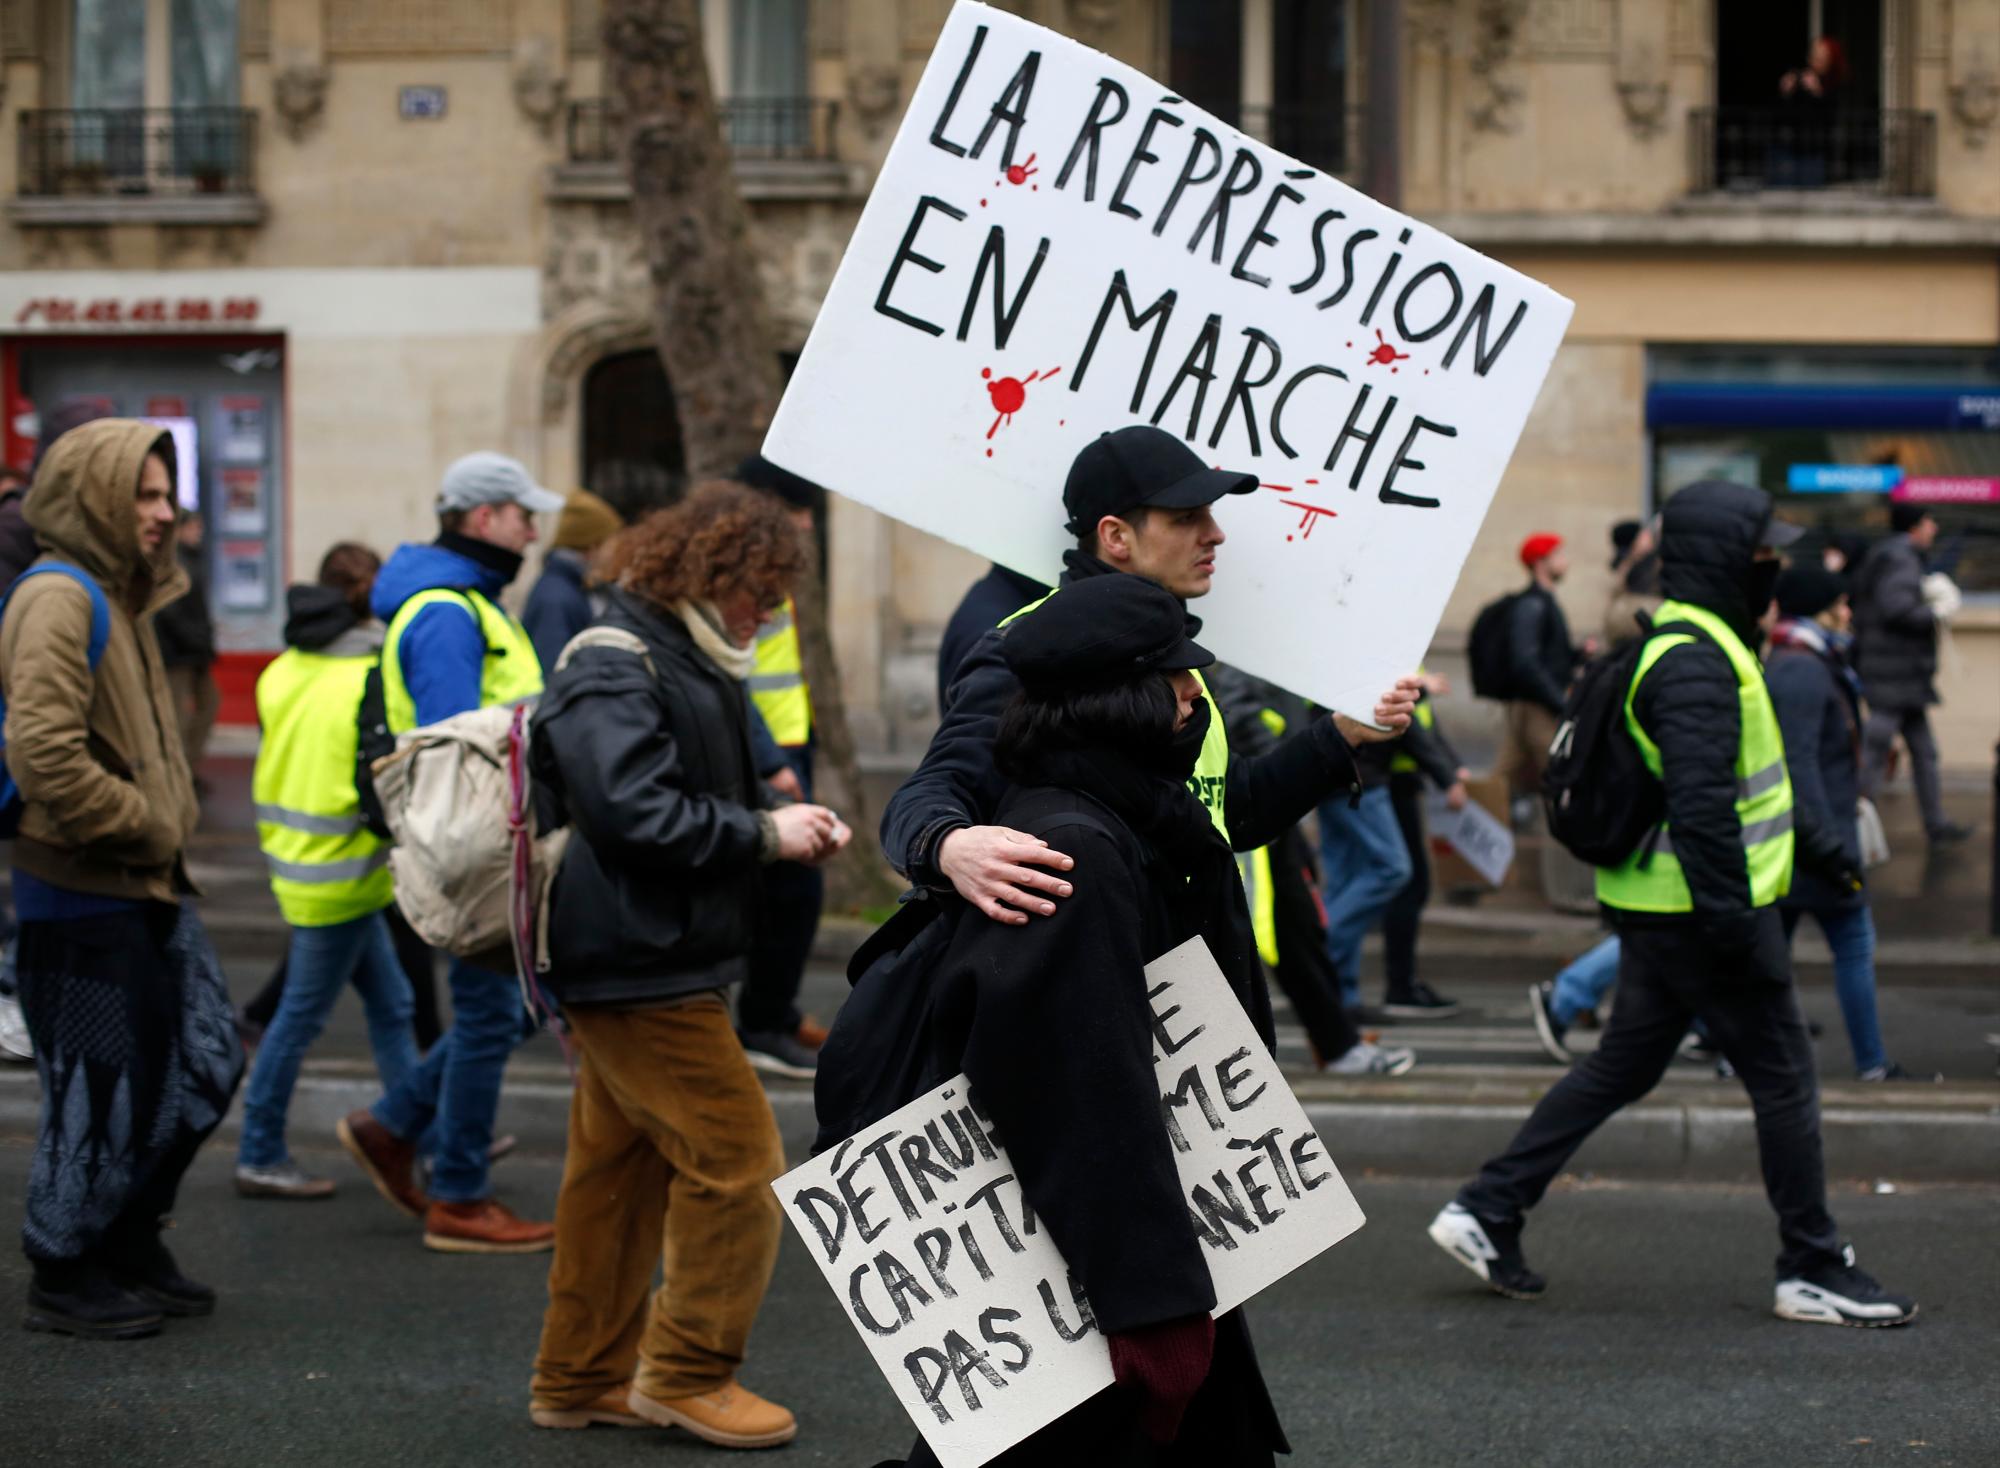 Los manifestantes del chaleco amarillo marchan con un cartel que dice “La represión continúa” durante una marcha el sábado 19 de enero de 2019 en París. Miles de manifestantes de chalecos amarillos se congregaron en varias ciudades francesas por décimo fin de semana consecutivo el sábado, a pesar del debate nacional iniciado esta semana por el presidente Emmanuel Macron con el objetivo de mitigar su ira.